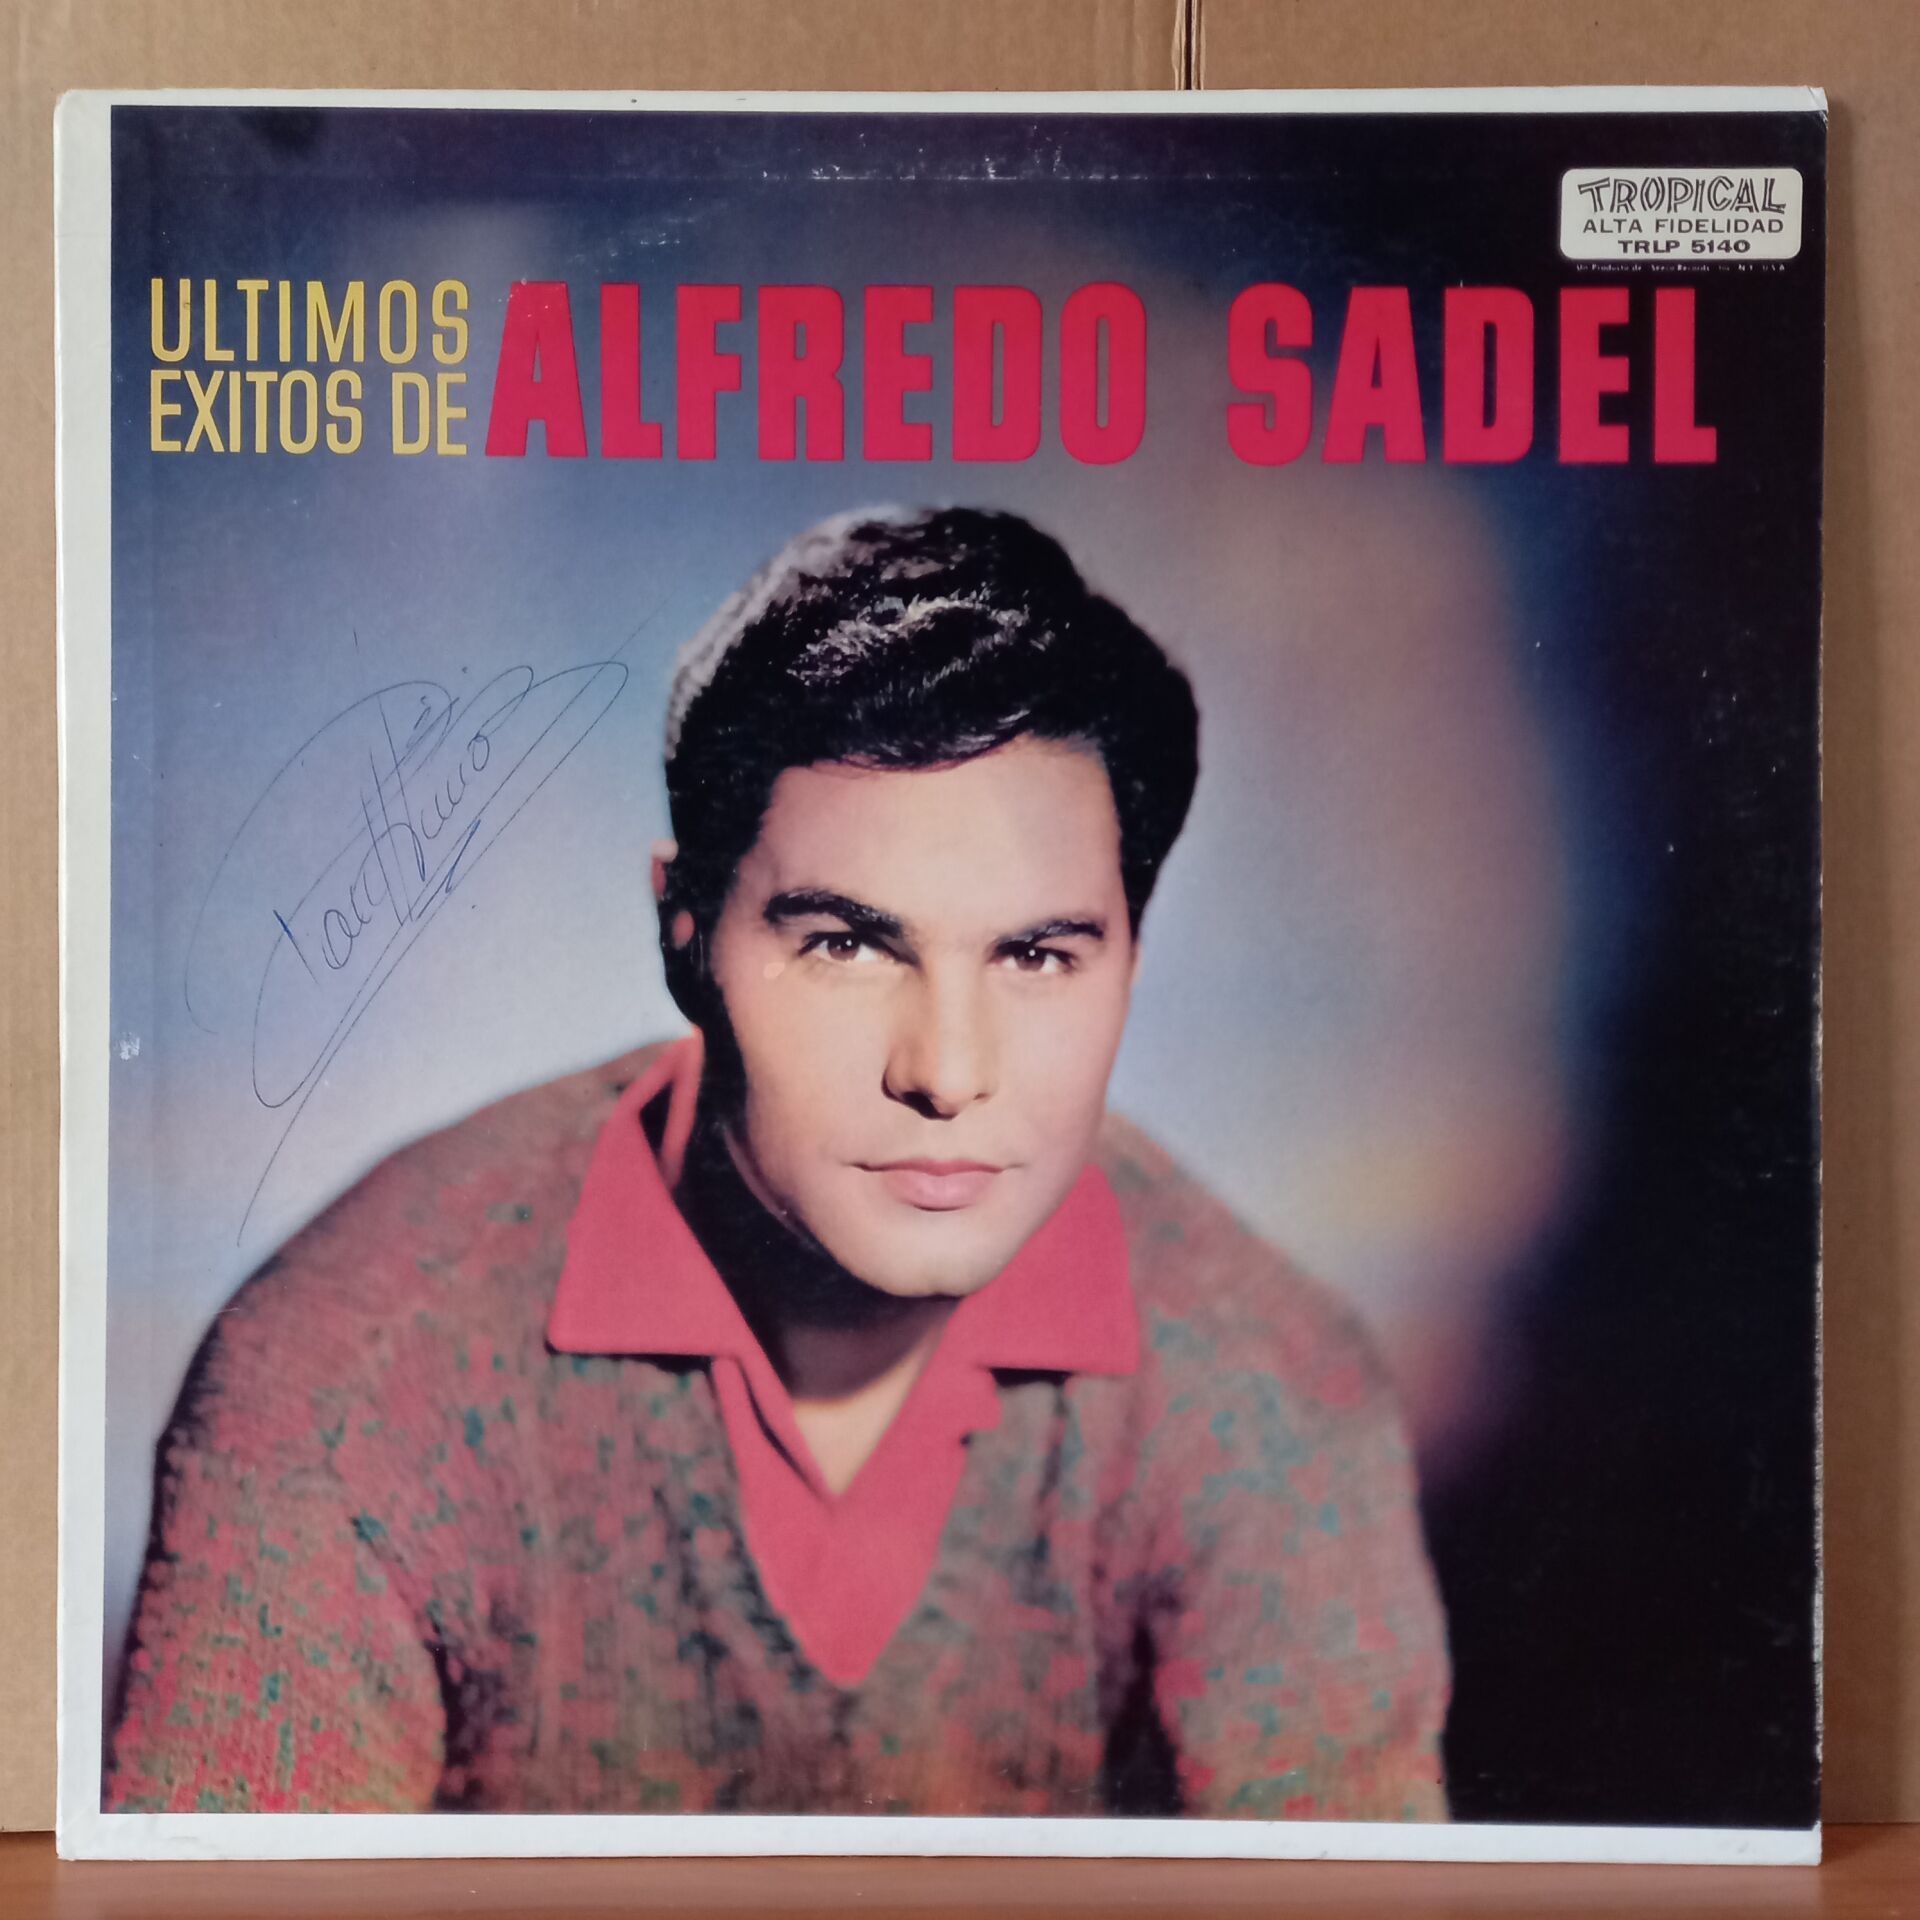 ALFREDO SADEL – ULTIMOS EXITOS DE ALFREDO SADEL - LP 2.EL PLAK